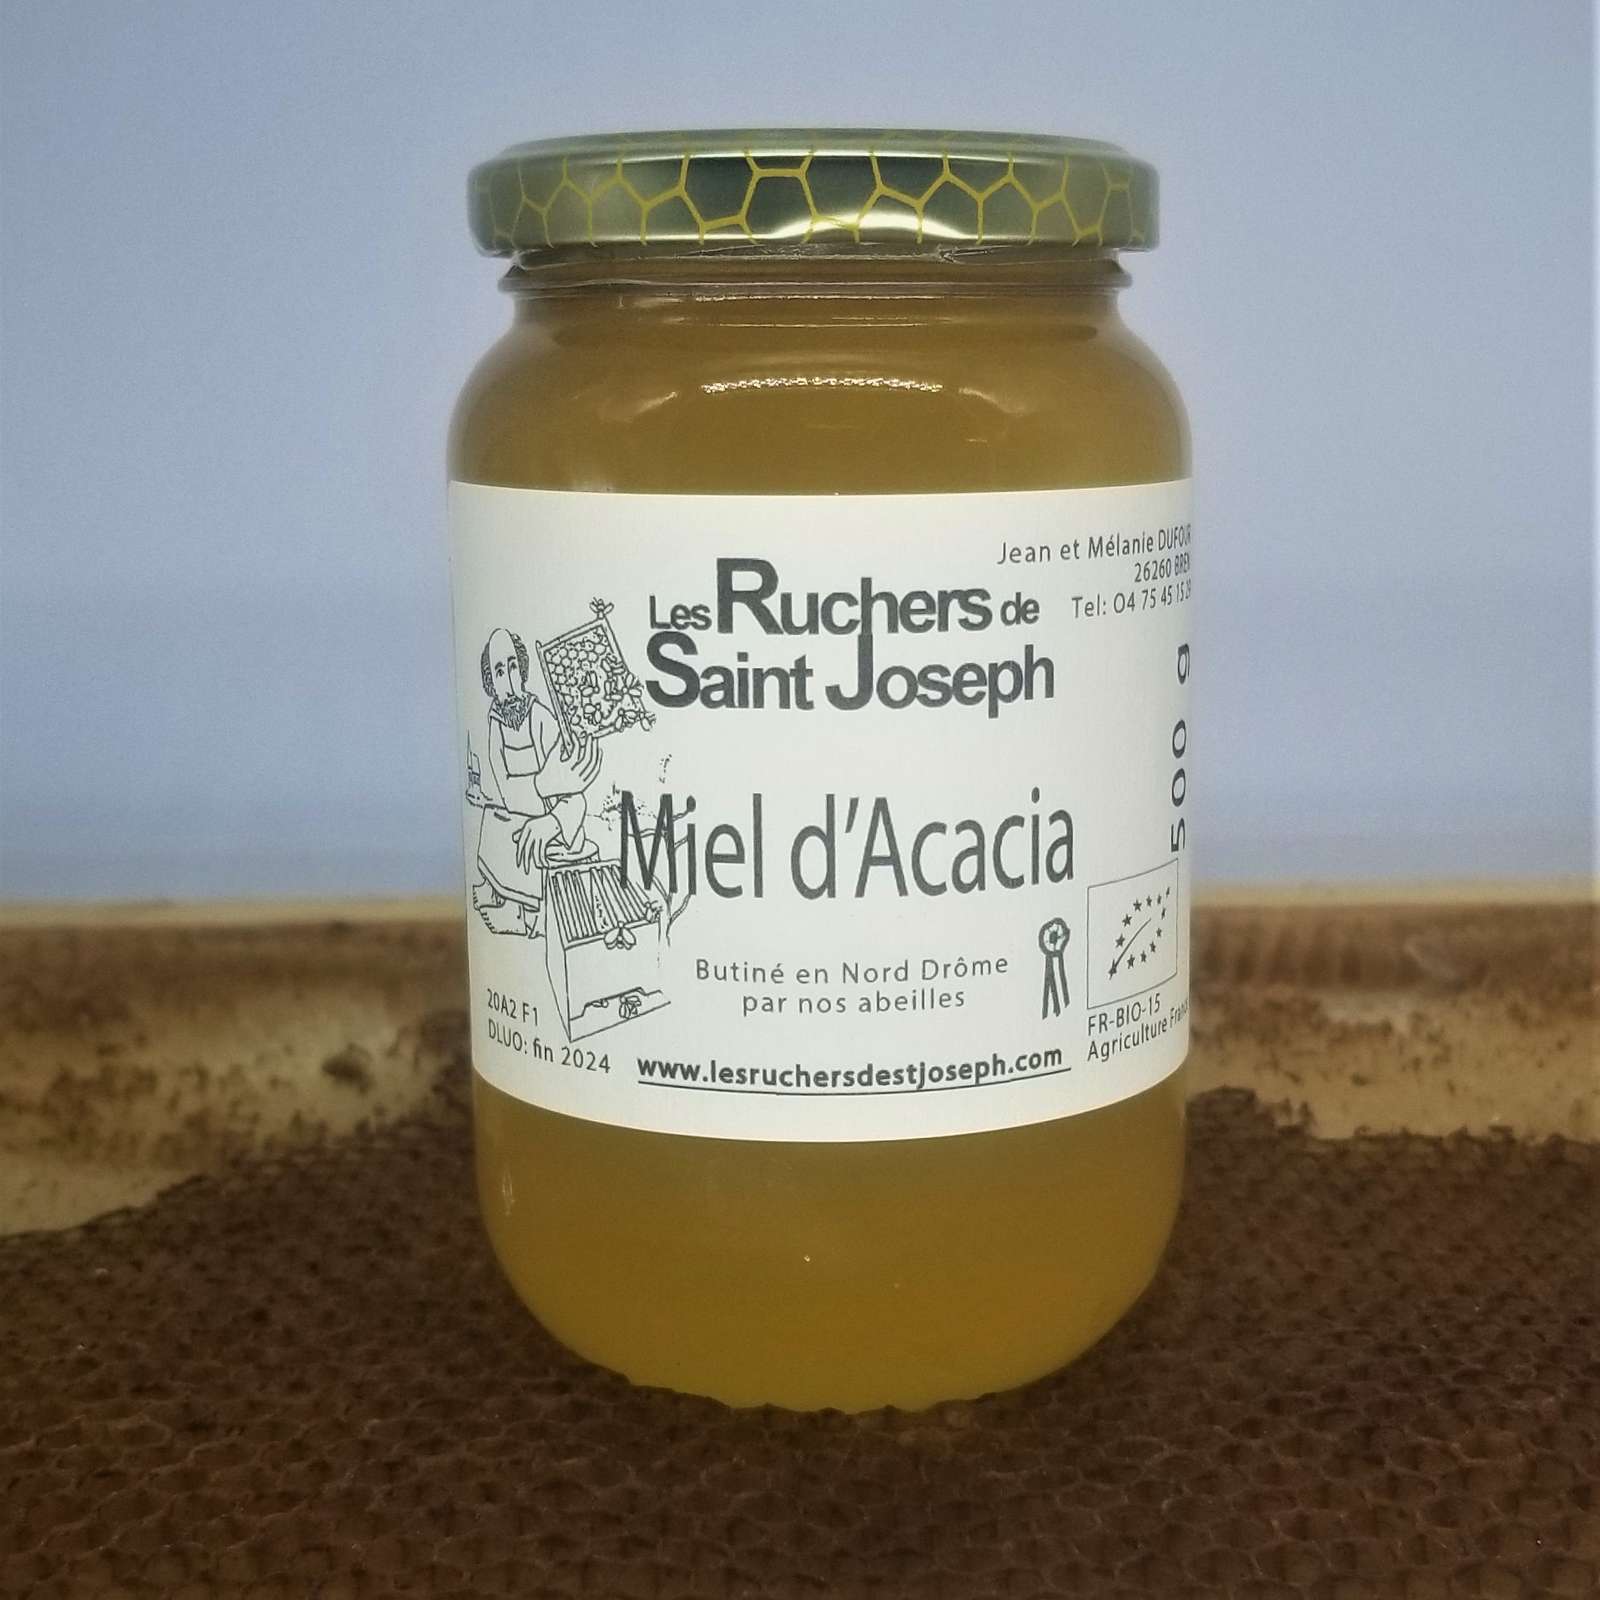 Miel d'Acacia - Ruchers